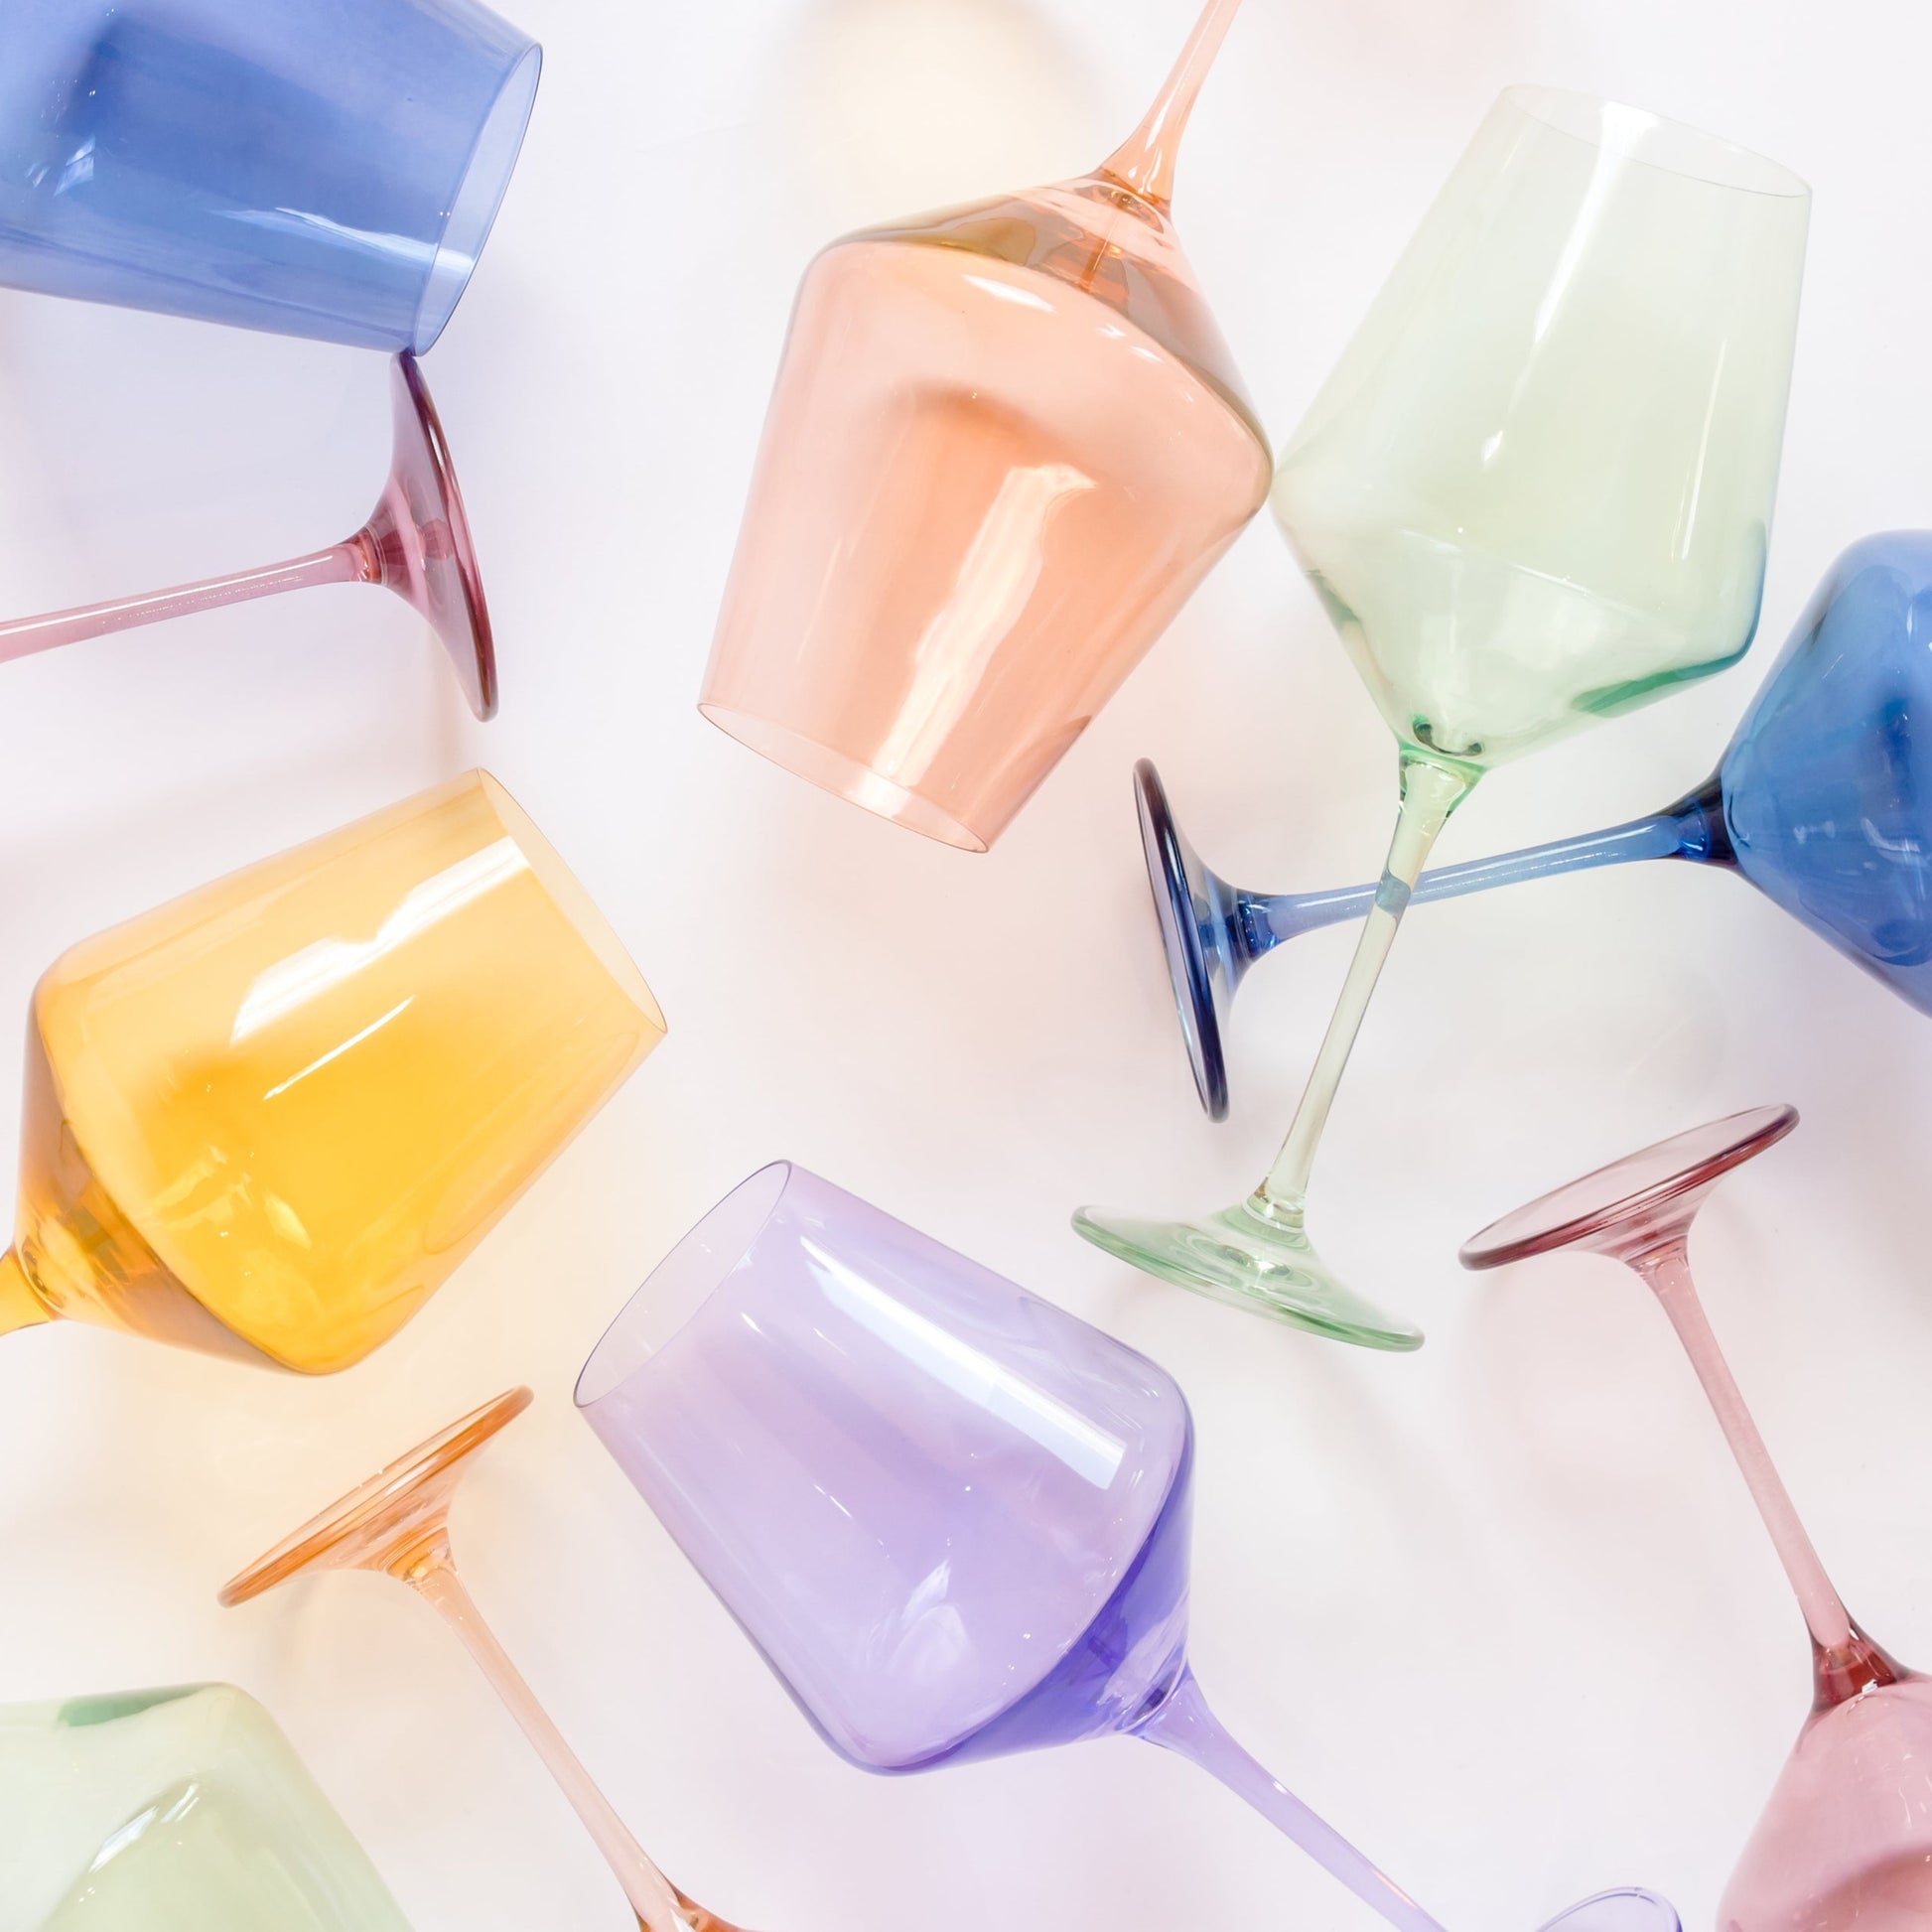 Colored Wine Glasses - Vibrant Wine Glass Collection